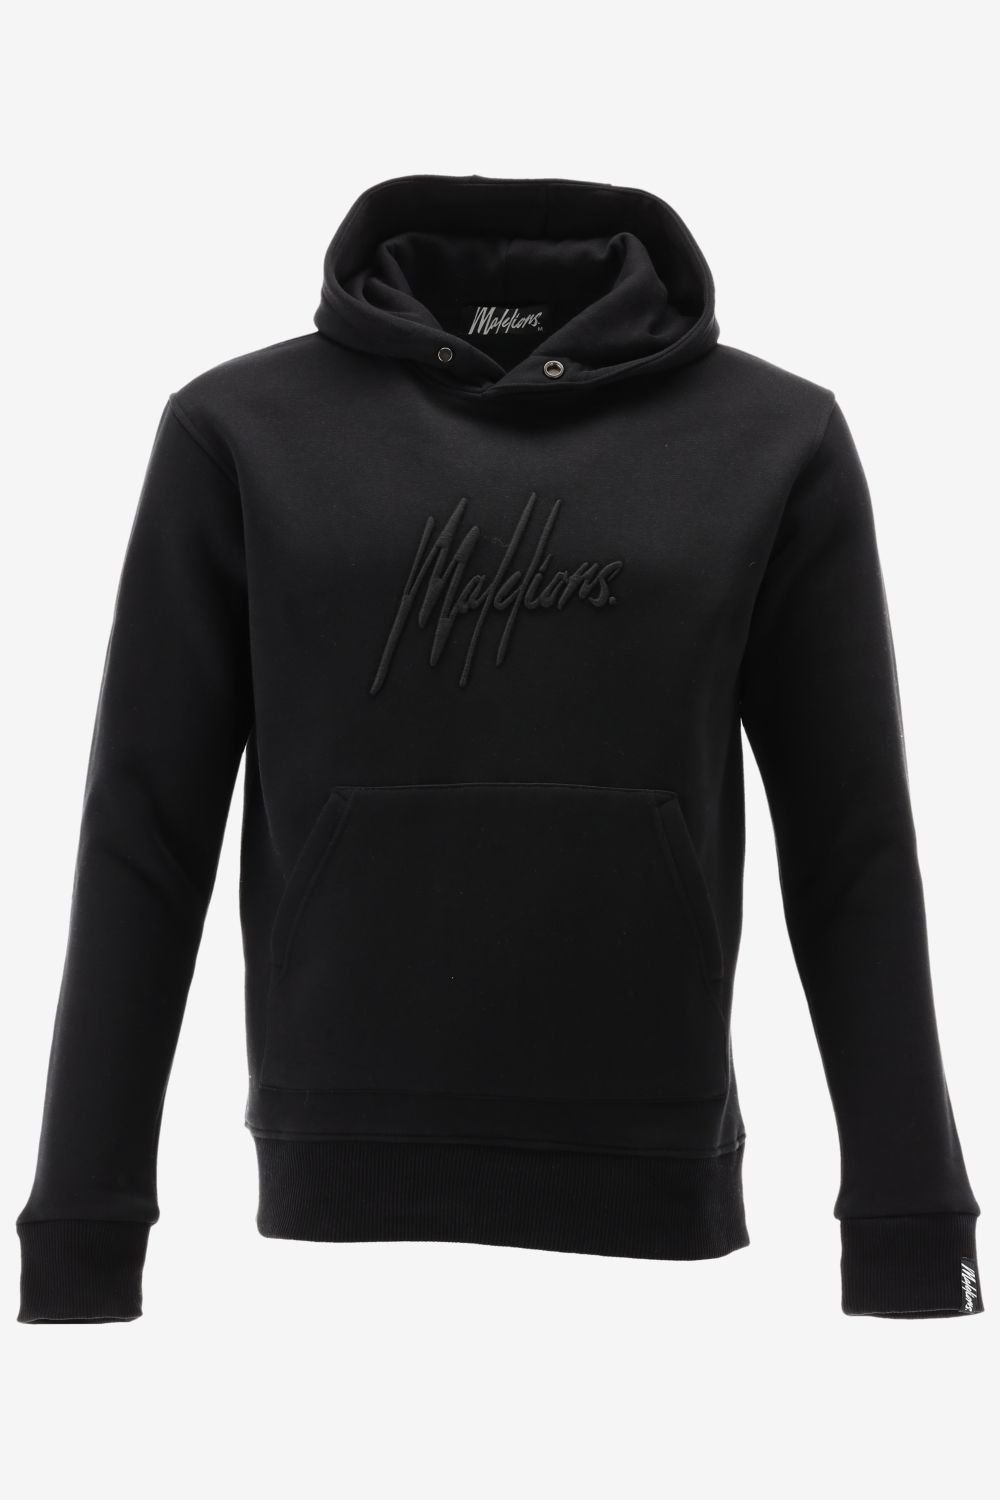 Malelions hoodie essentials hoodie maat M